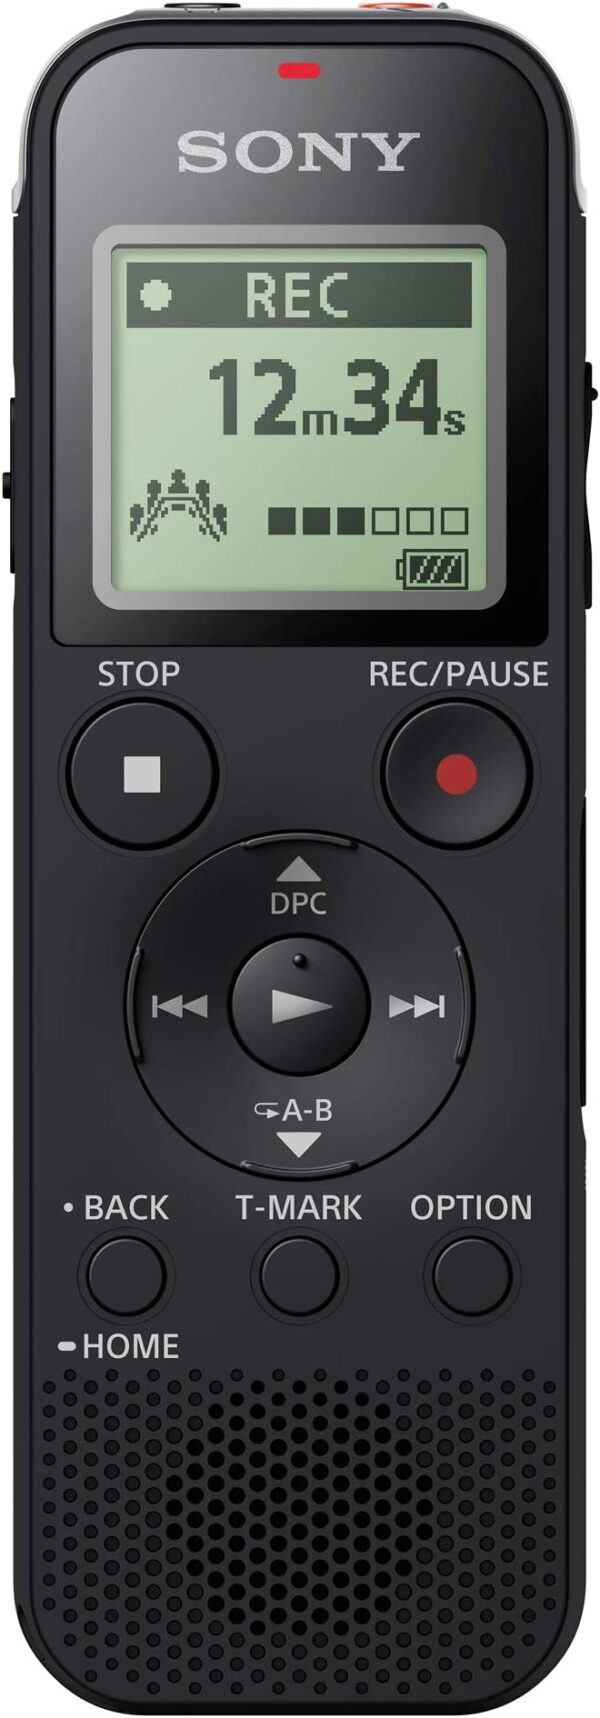 مسجل صوت رقمي مع يو اس بي مدمج من سوني - لون اسود، ICD-PX470 احصل على أداء عالي الدقة مع مسجل صوت رقمي من سوني باللون الأسود، يحتوي على يو اس بي مدمج لسهولة التحميل والتركيب - ICD-PX470.